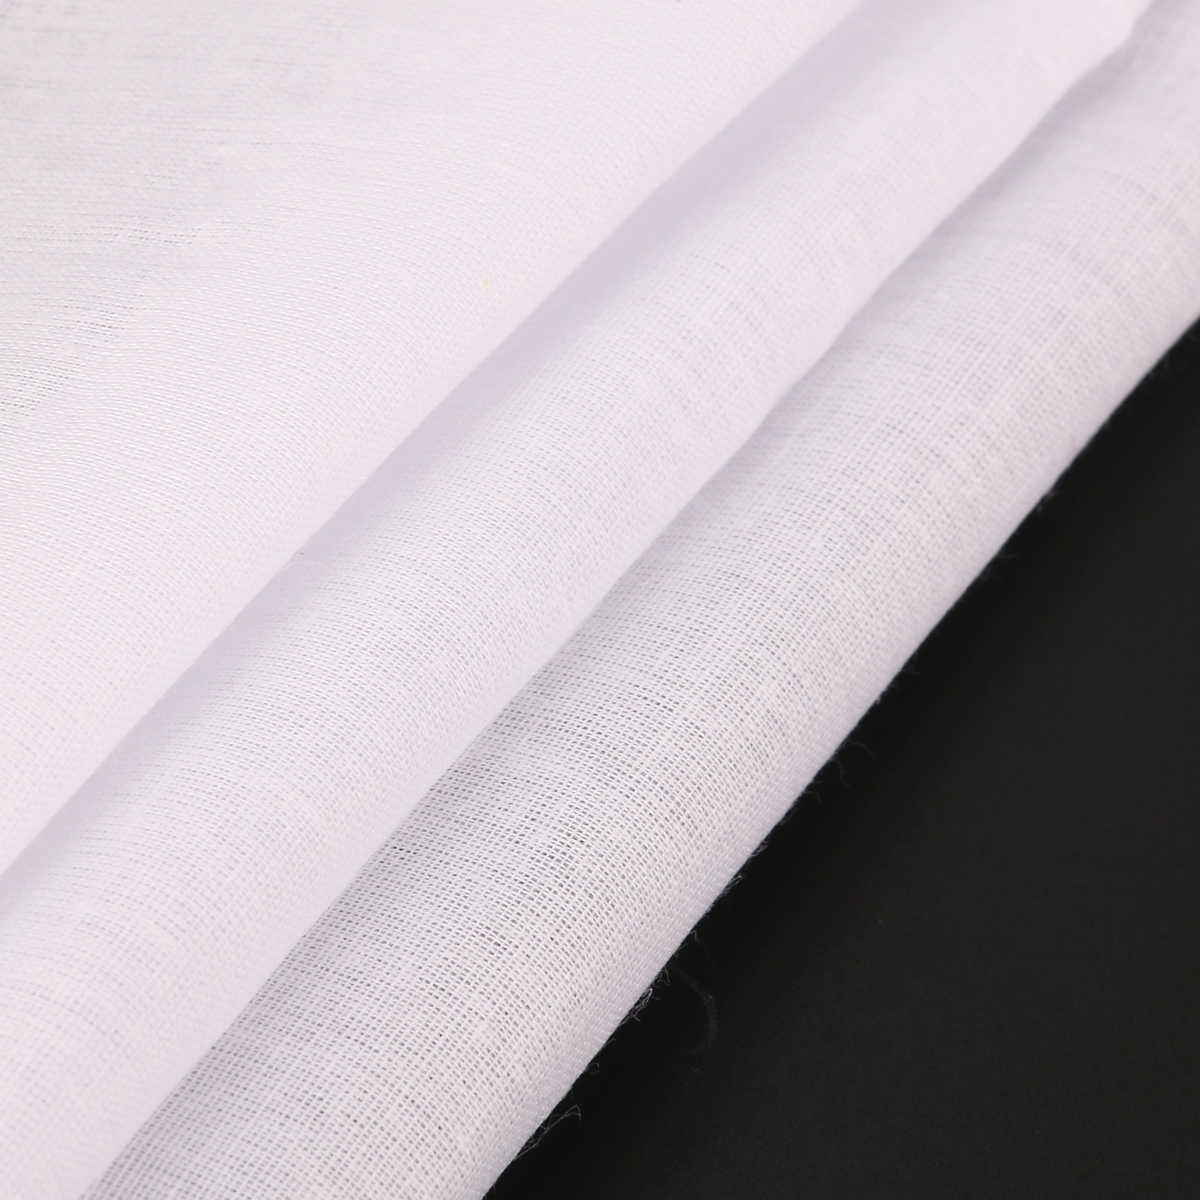 12 stk hvide bomuldslommetørklæder bomuldshåndklæder lommetørklæder til mænd kvinder børn børn  (38 * 38cm)